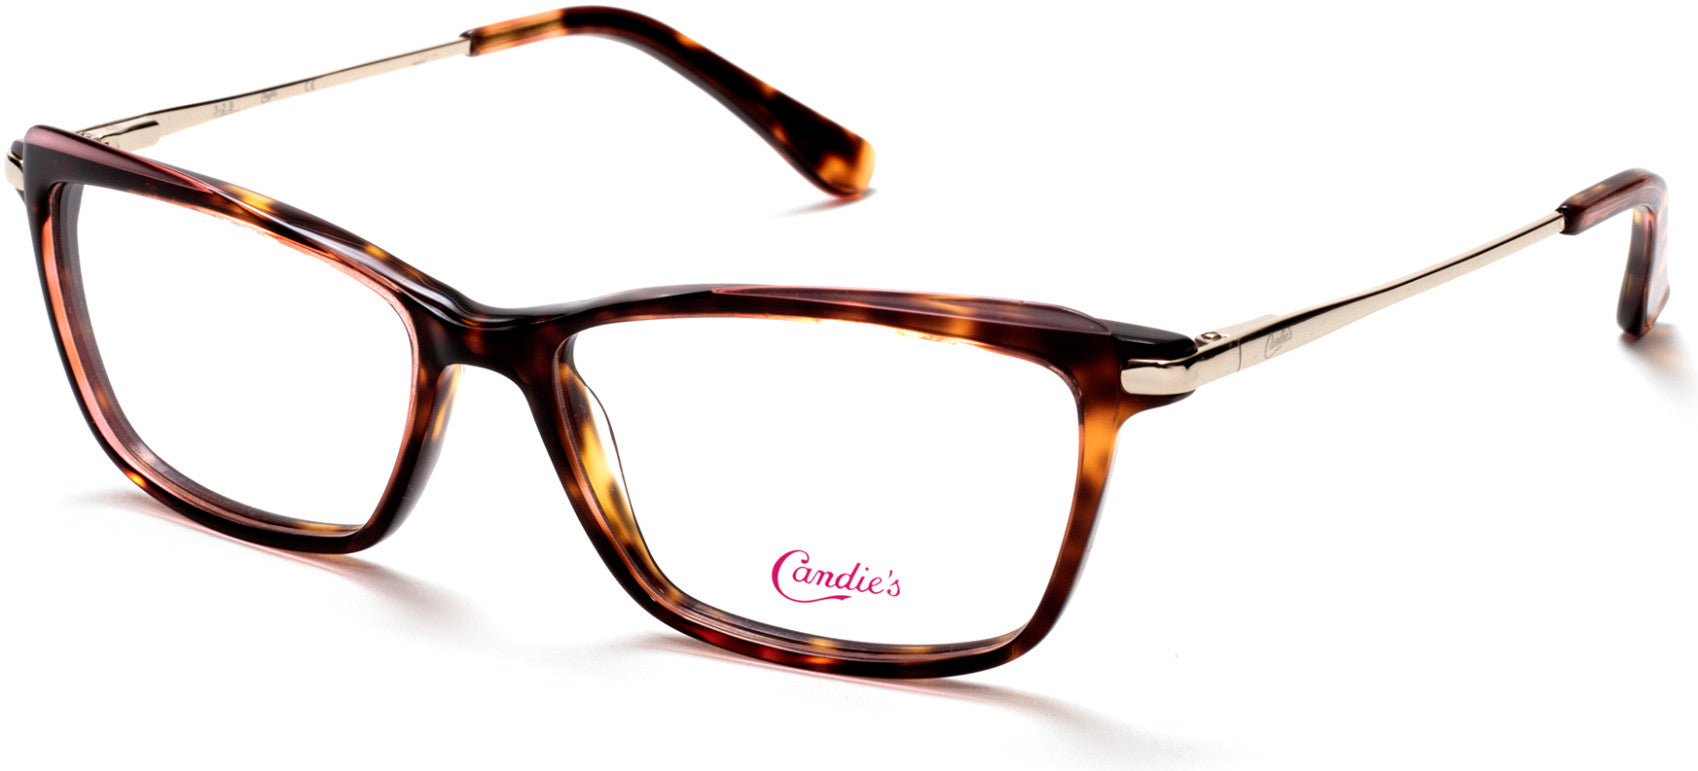 Candies CA0174 Geometric Eyeglasses 052-052 - Dark Havana